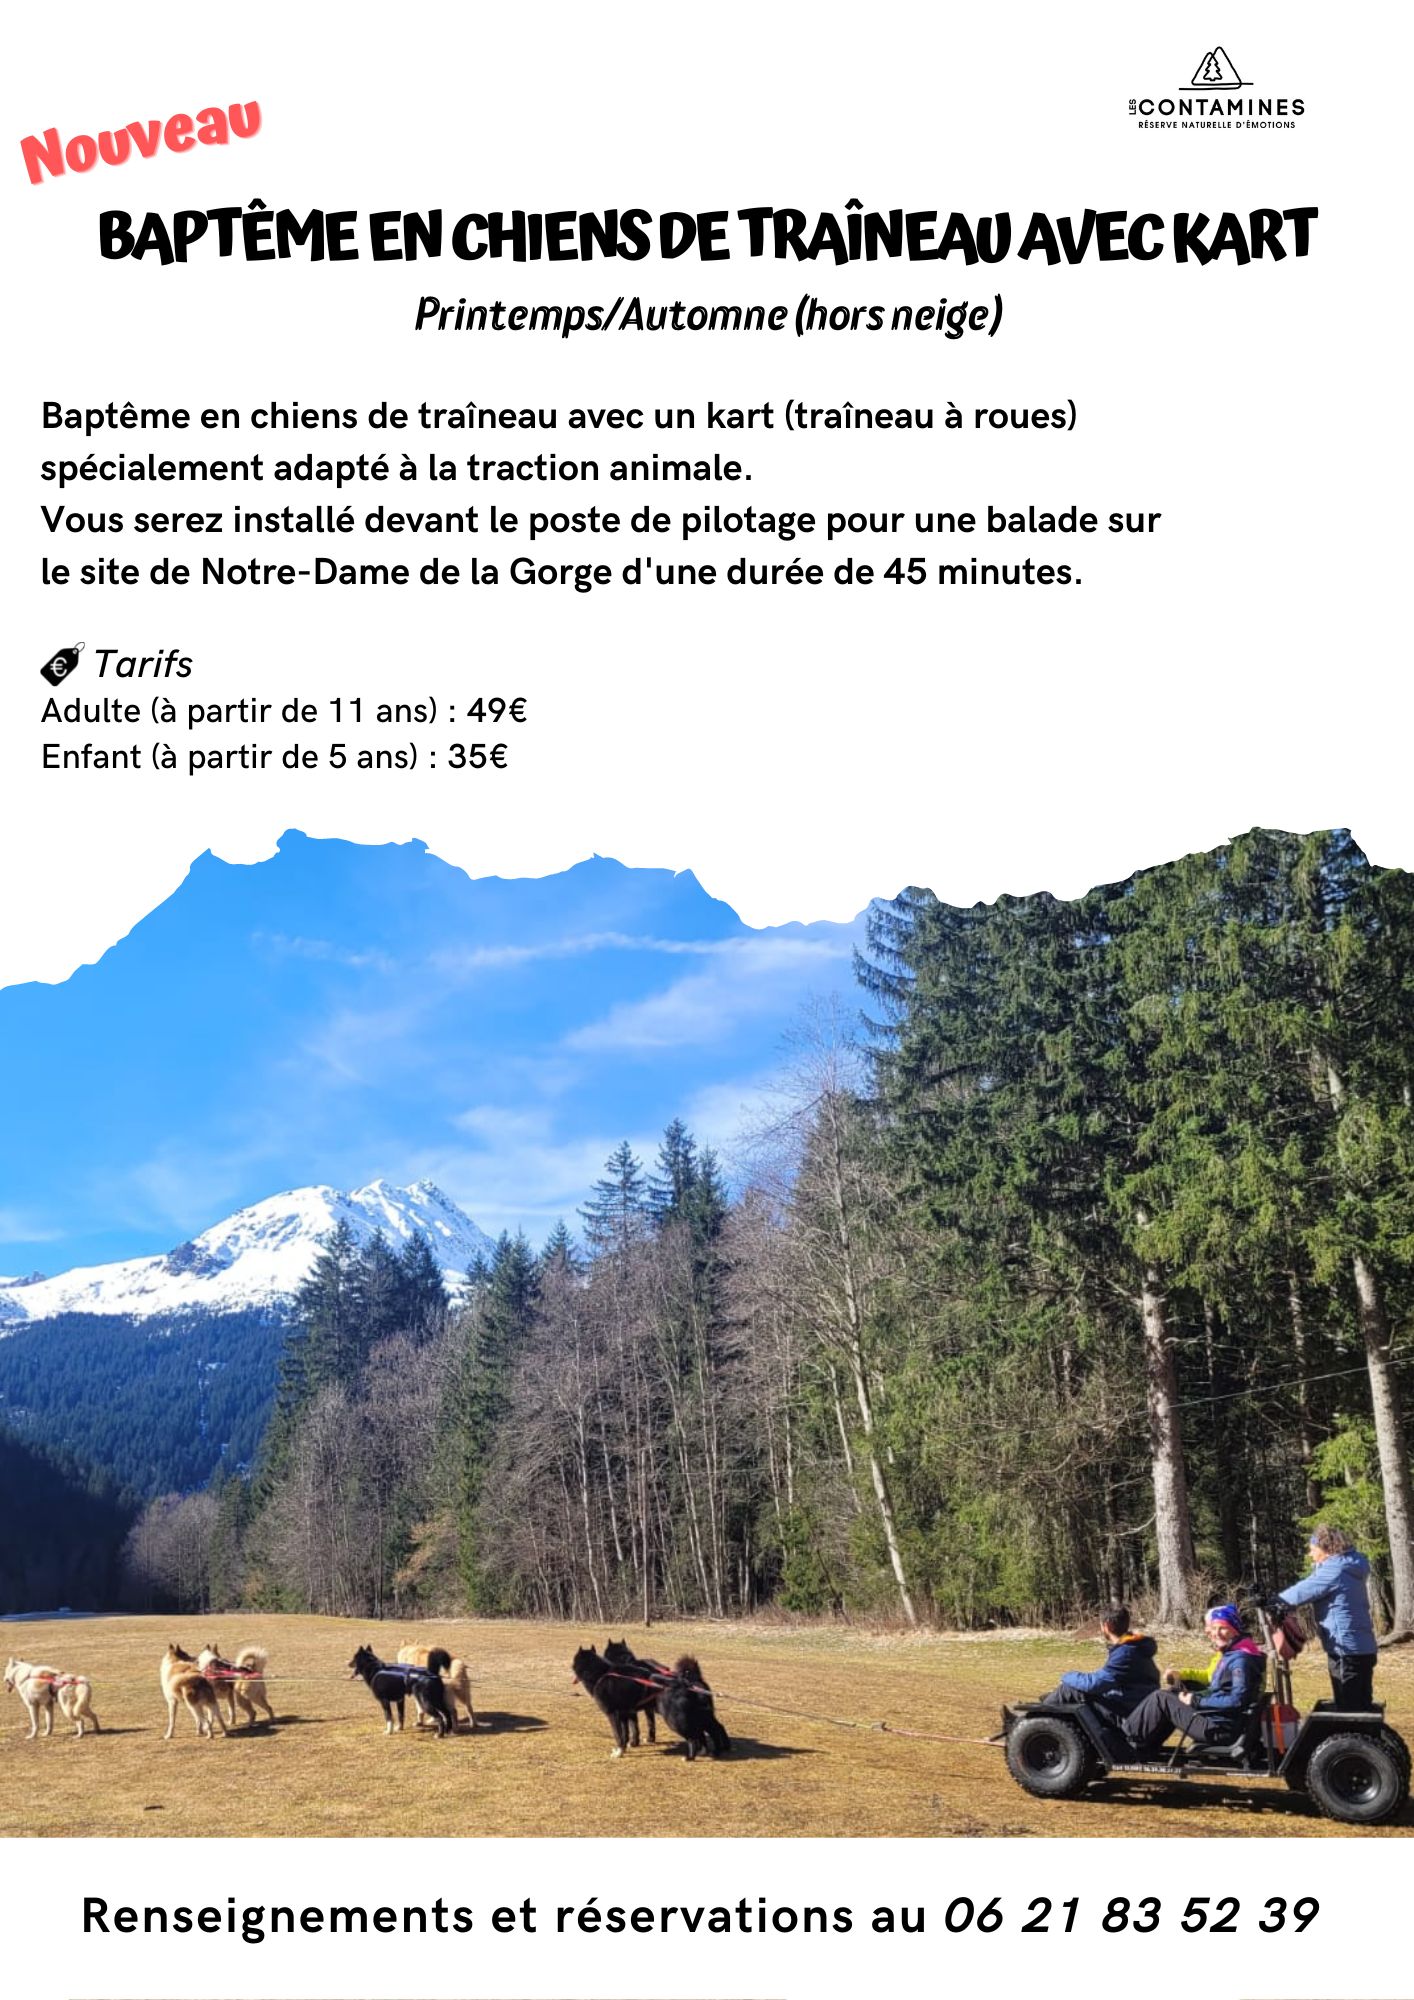 Chiens de traîneau  Les Contamines Montjoie, le village nature au pied du  Mont-Blanc